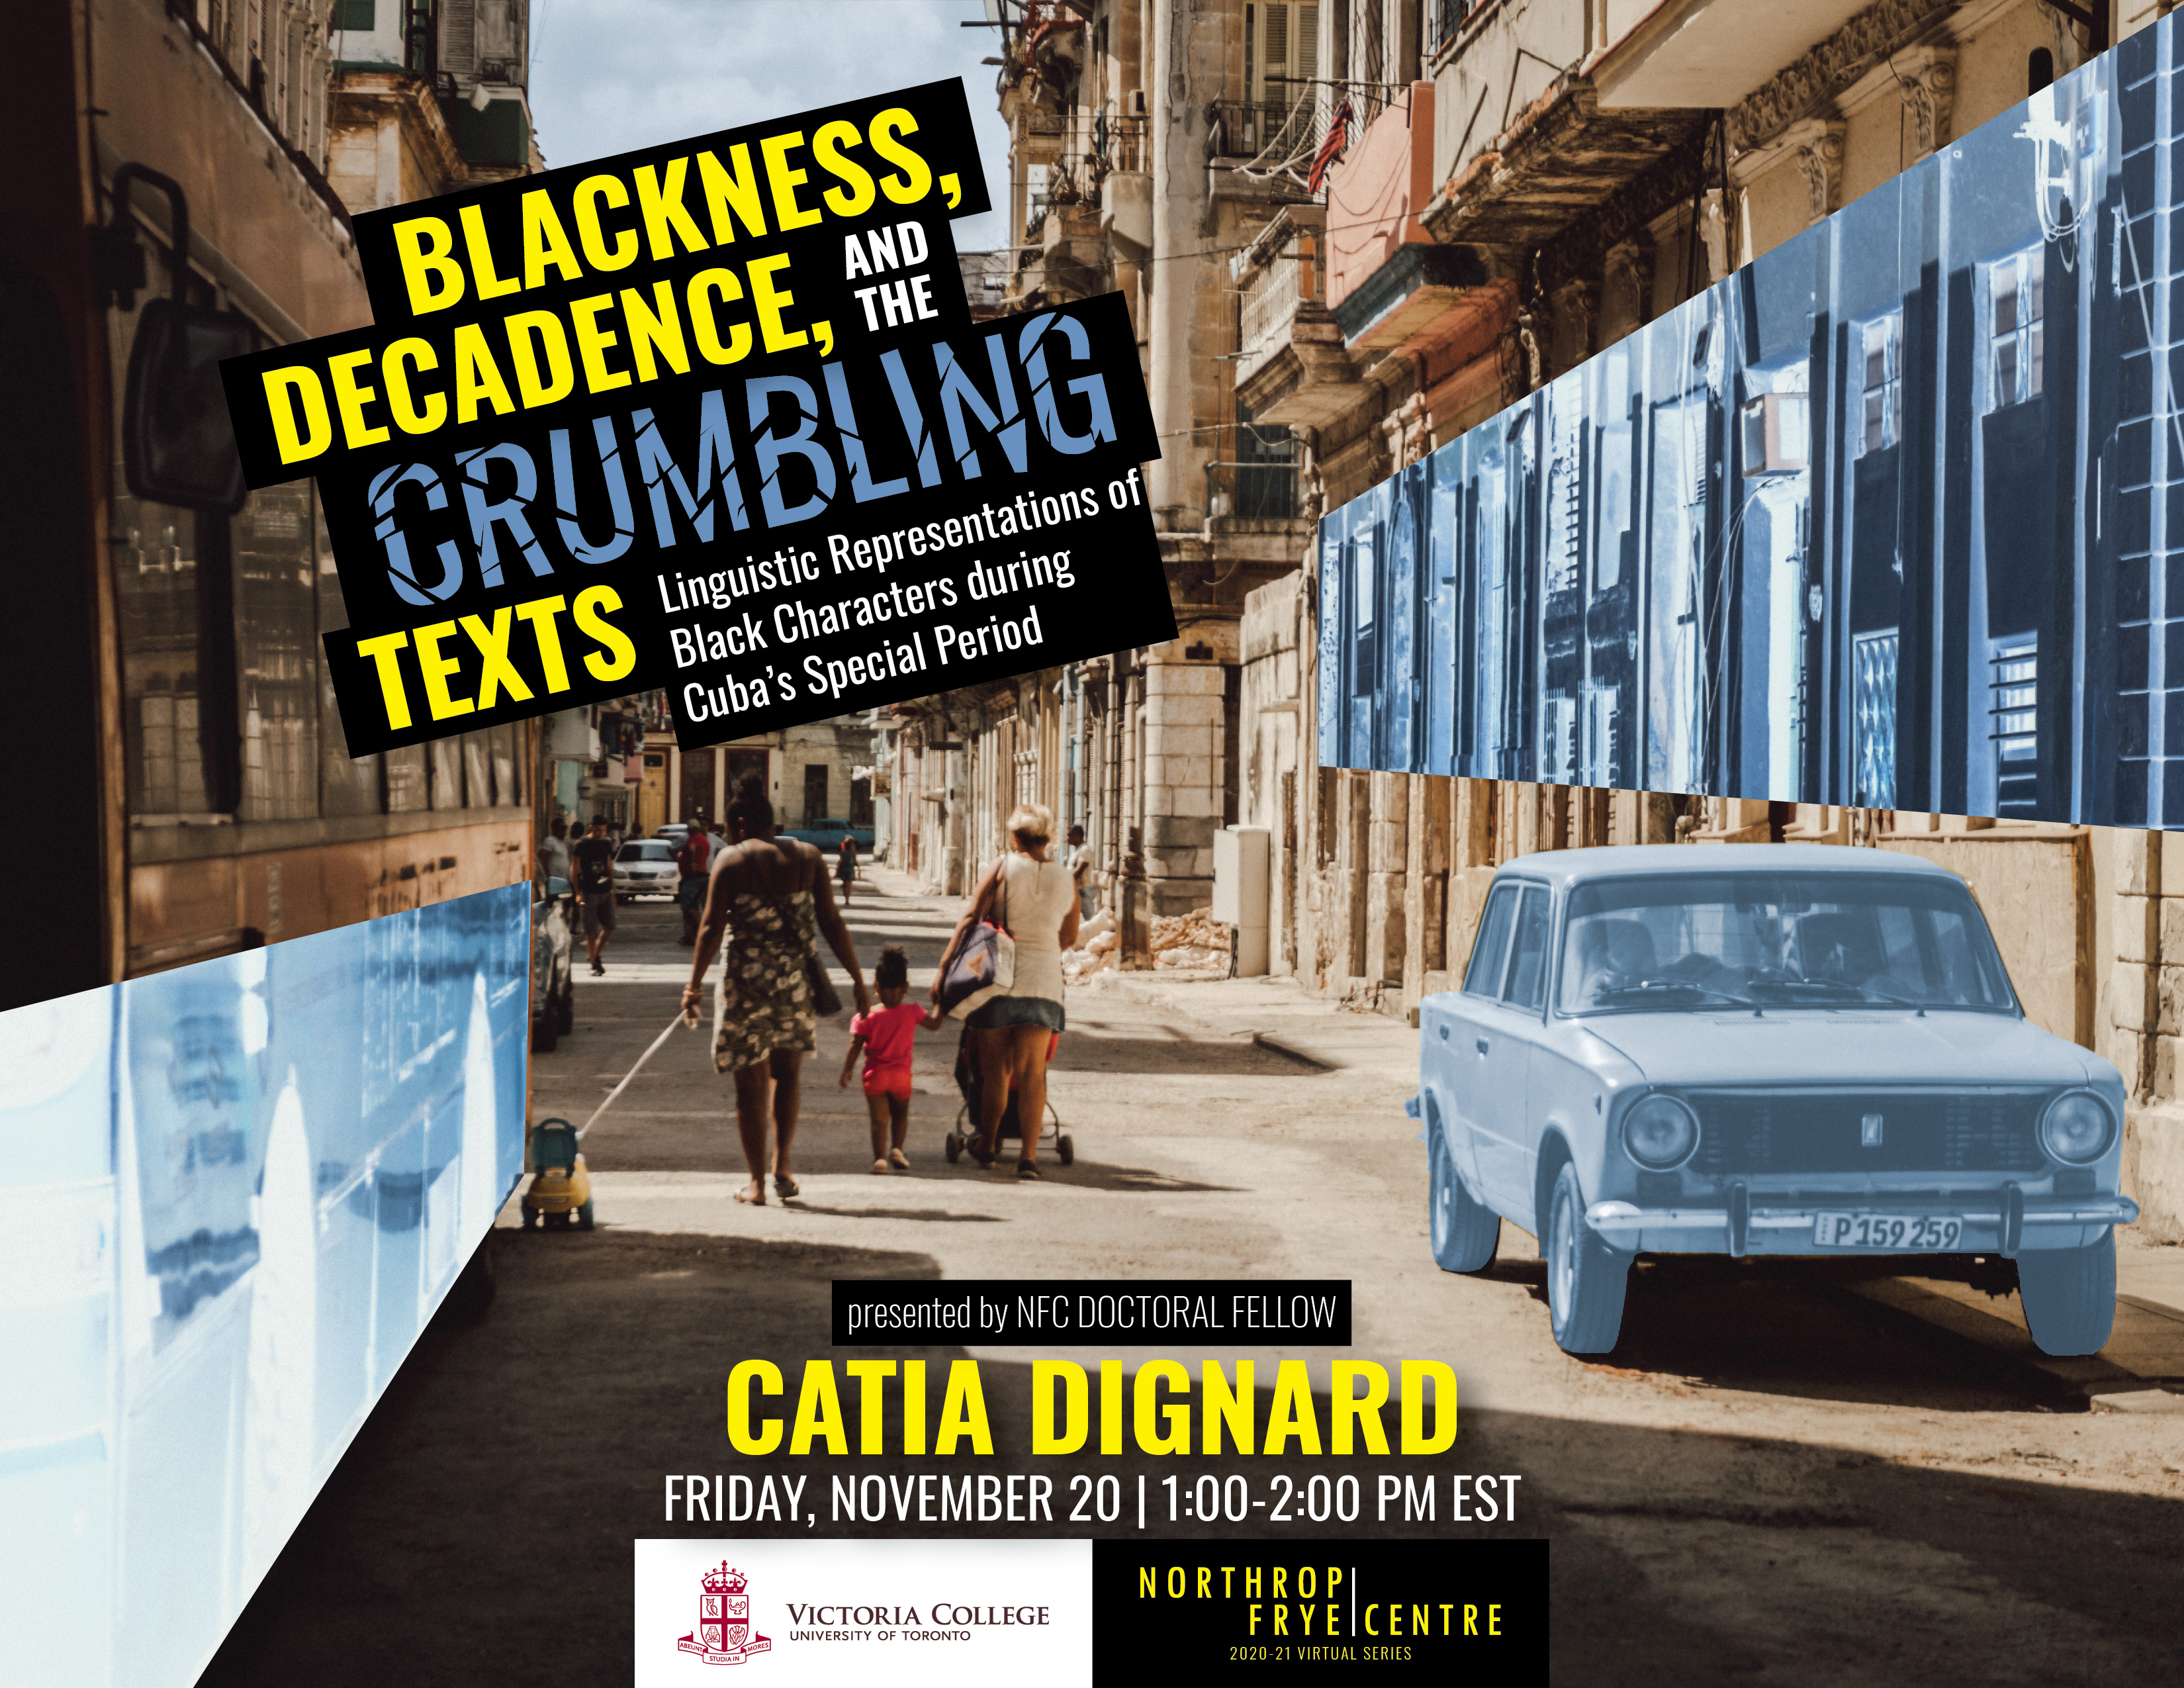 Nov. 20, 2020 | Blackness, Decadence and the Crumbling Texts | Catia Dignard